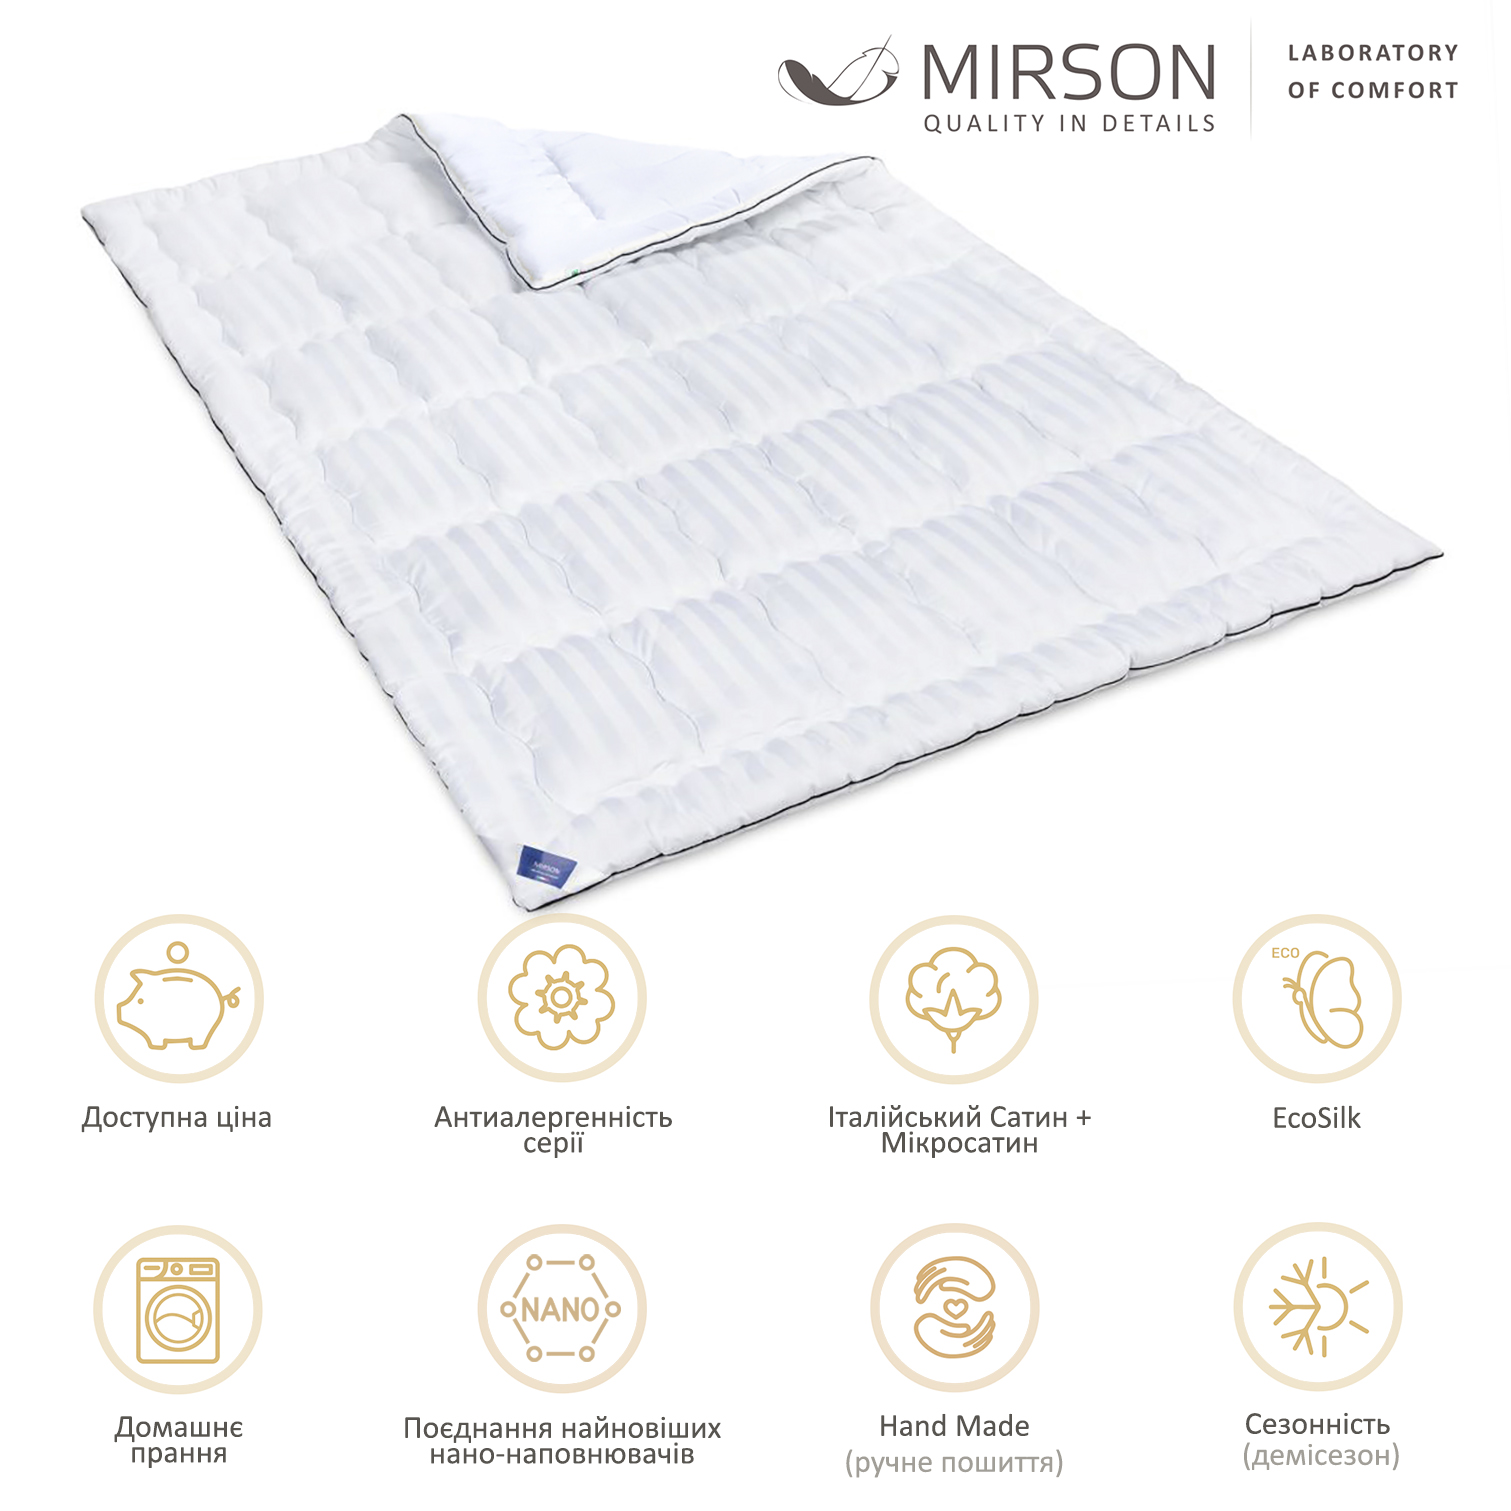 Одеяло антиаллергенное MirSon Royal Pearl Hand Made EcoSilk №0553, демисезонное, 220x240 см, белое - фото 5